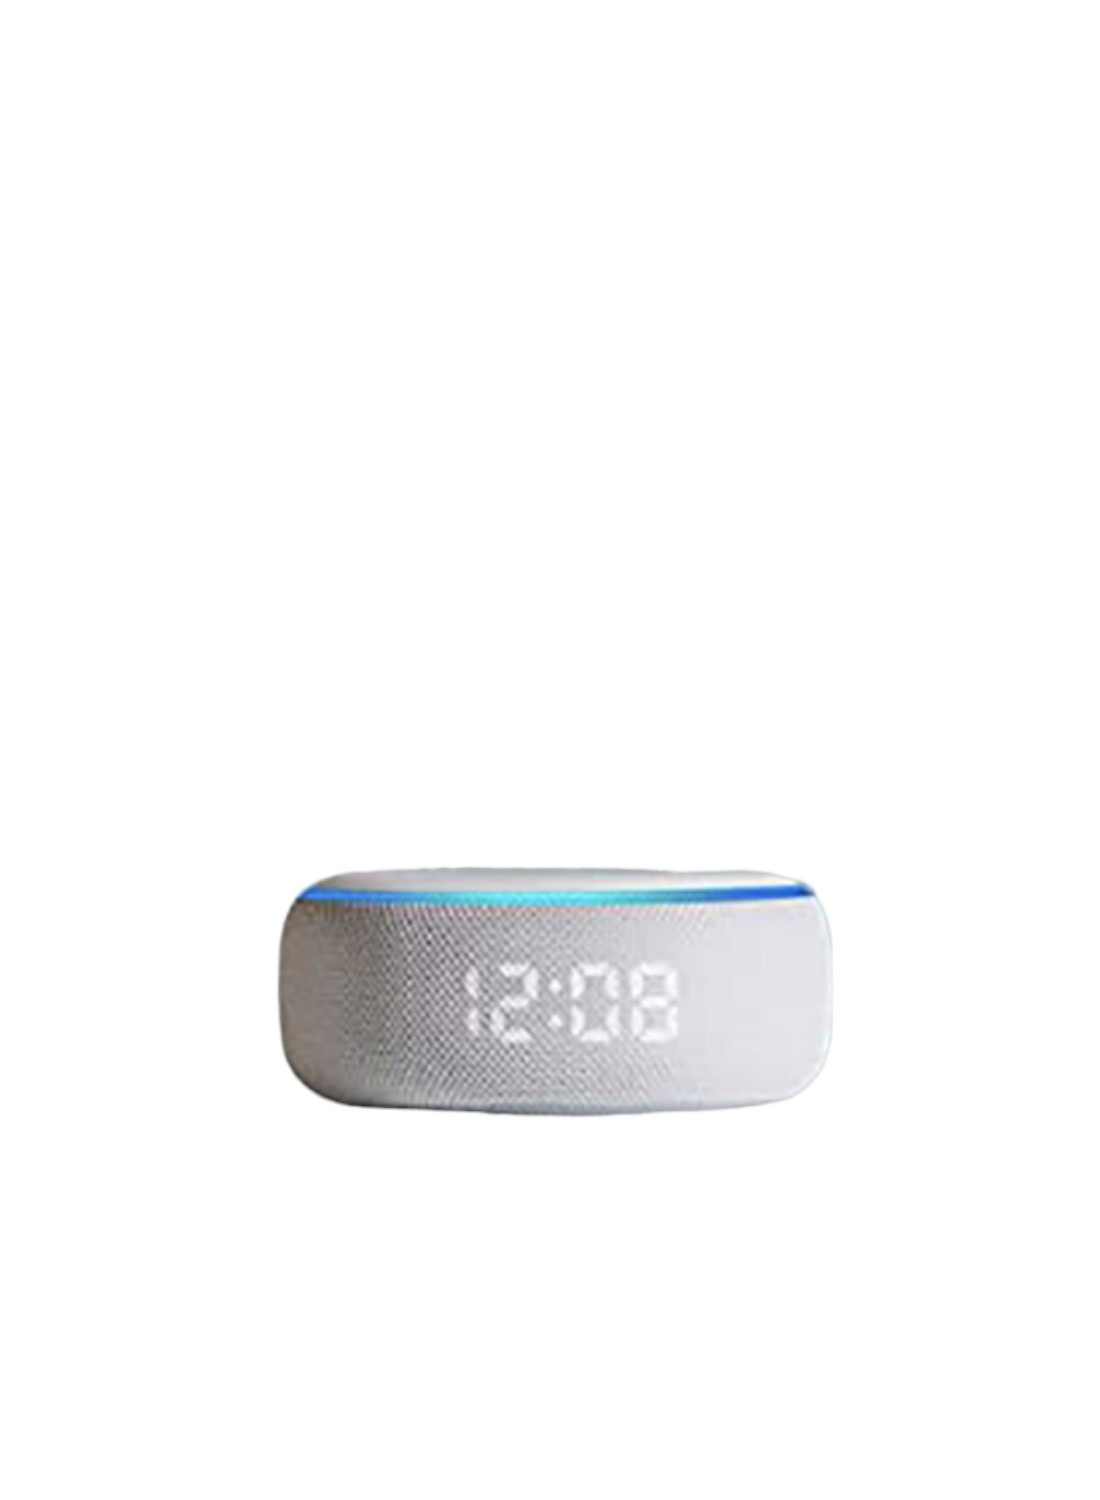 Echo Dot 3 con Reloj / Altavoz Inteligente